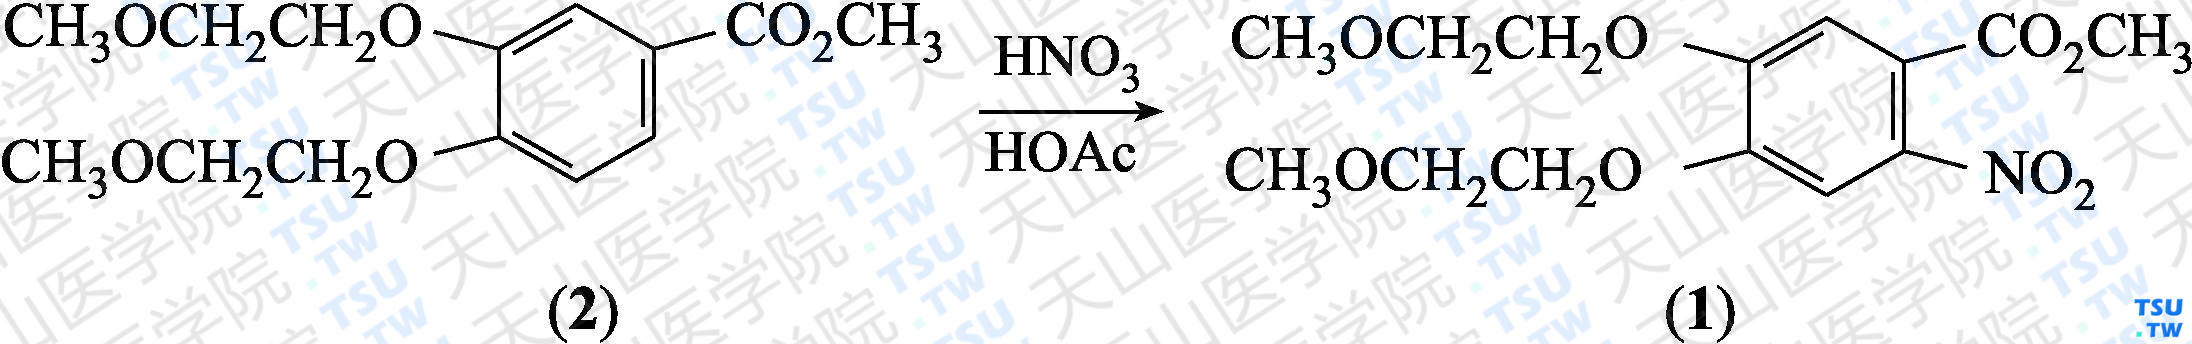 4，5-二-（2-甲氧乙氧基）-2-硝基苯甲酸甲酯（分子式：C<sub>14</sub>H<sub>19</sub>NO<sub>8</sub>）的合成方法路线及其结构式